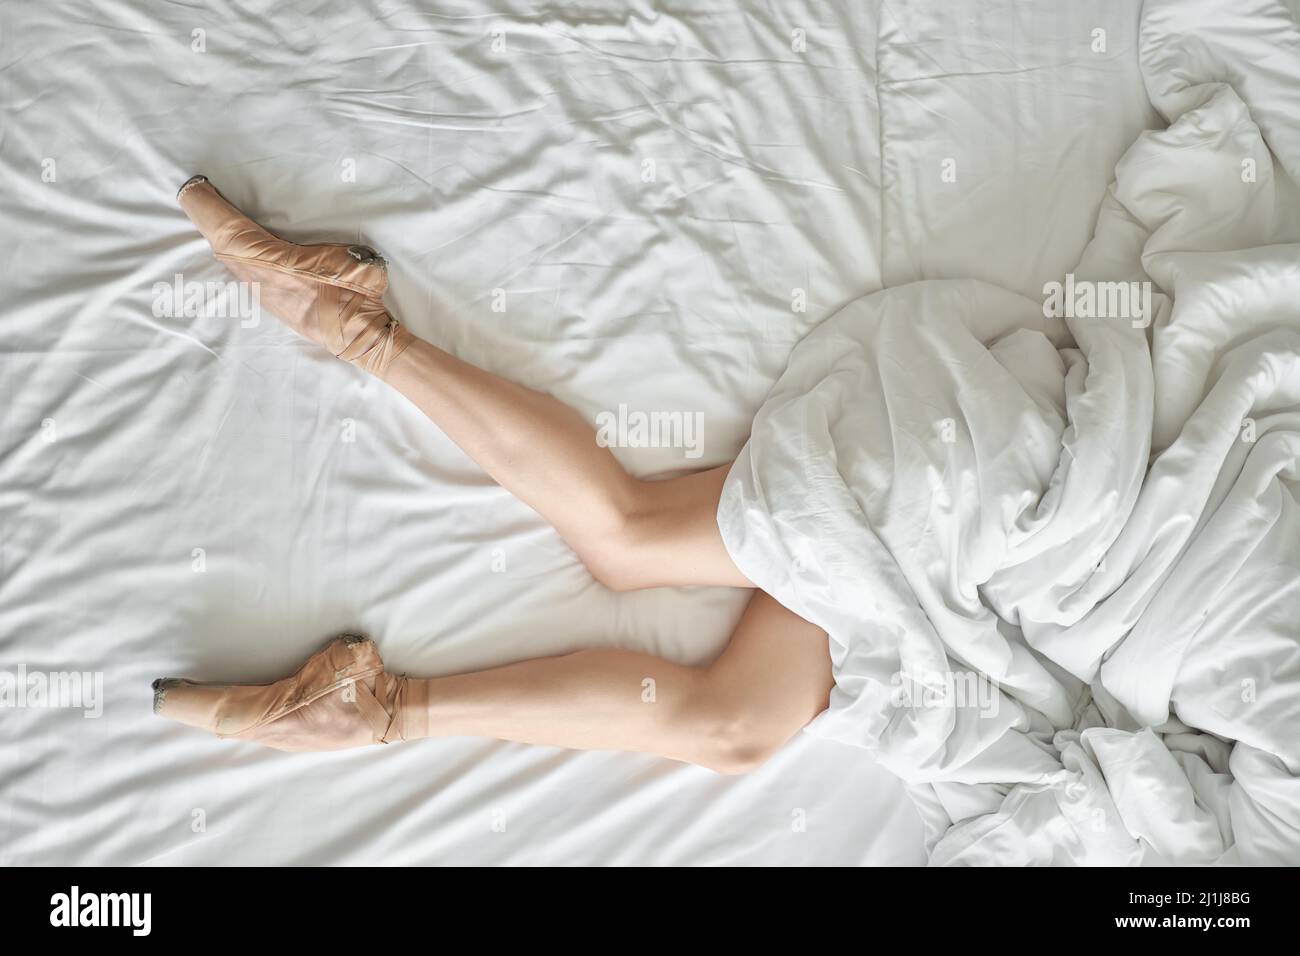 Frau in Spitzenschuhen zeigt ihre Beine unter dem Deckchen Stockfoto